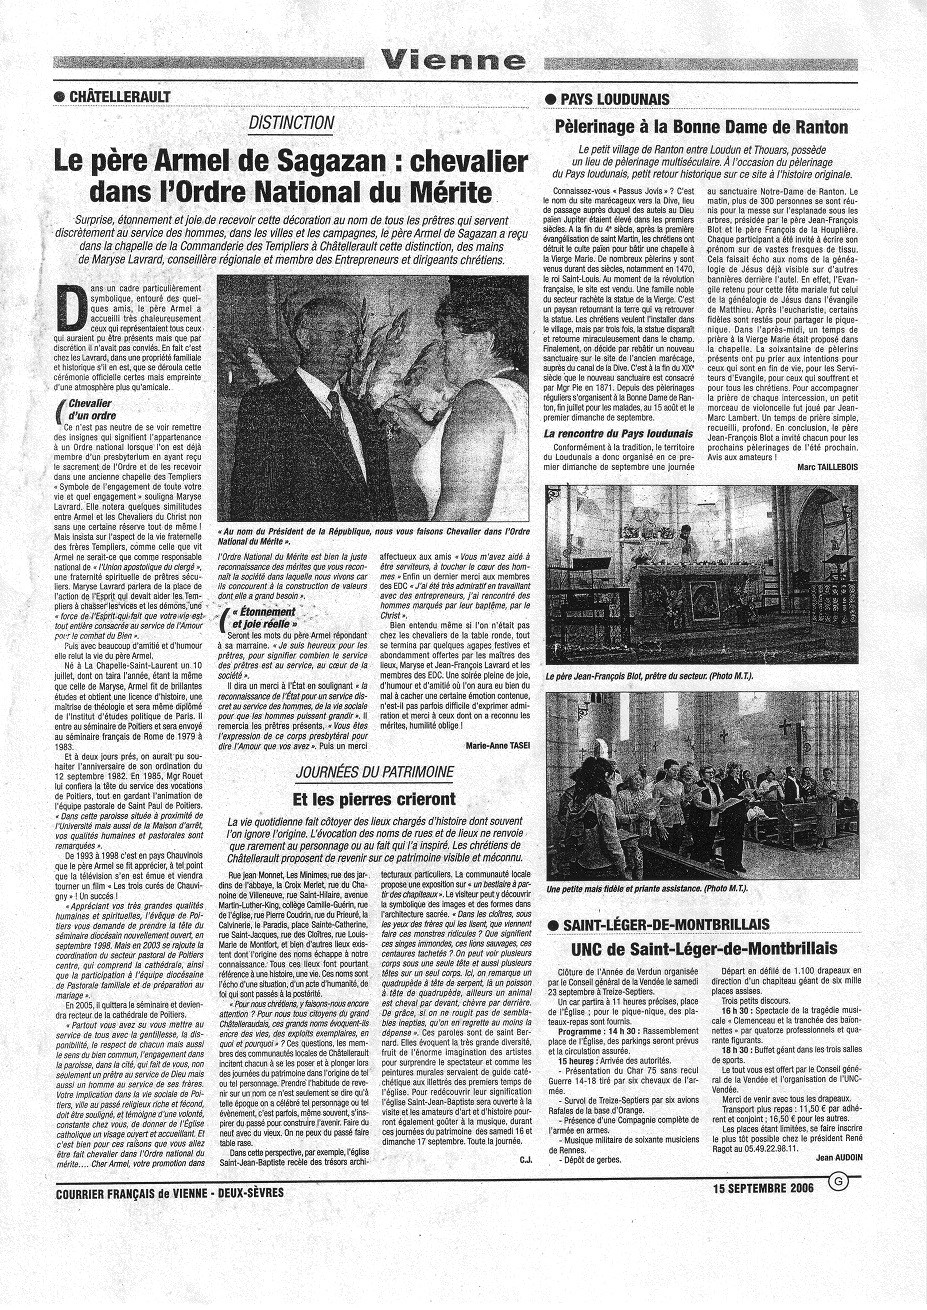 Article du Courrier Français 15/09/2006 : Le père Armel de Sagazan, chevalier dans l'Ordre National du Mérite